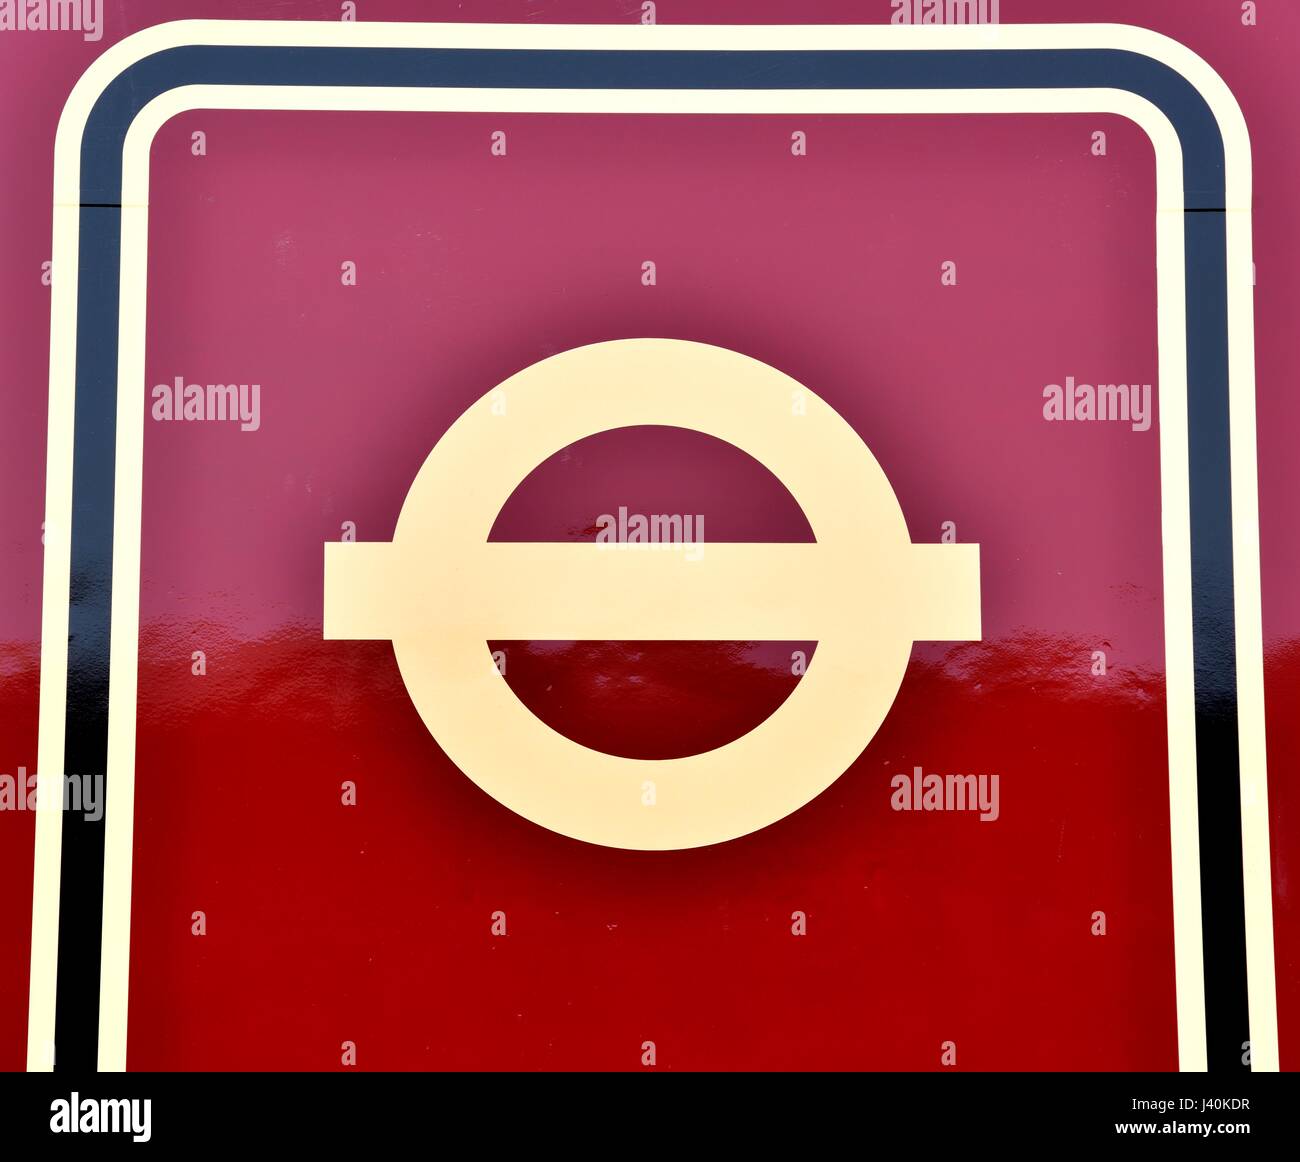 Logotipos Do Sistema De Transporte De Londres Imagem Editorial - Ilustração  de arquitetura, imagem: 89752045